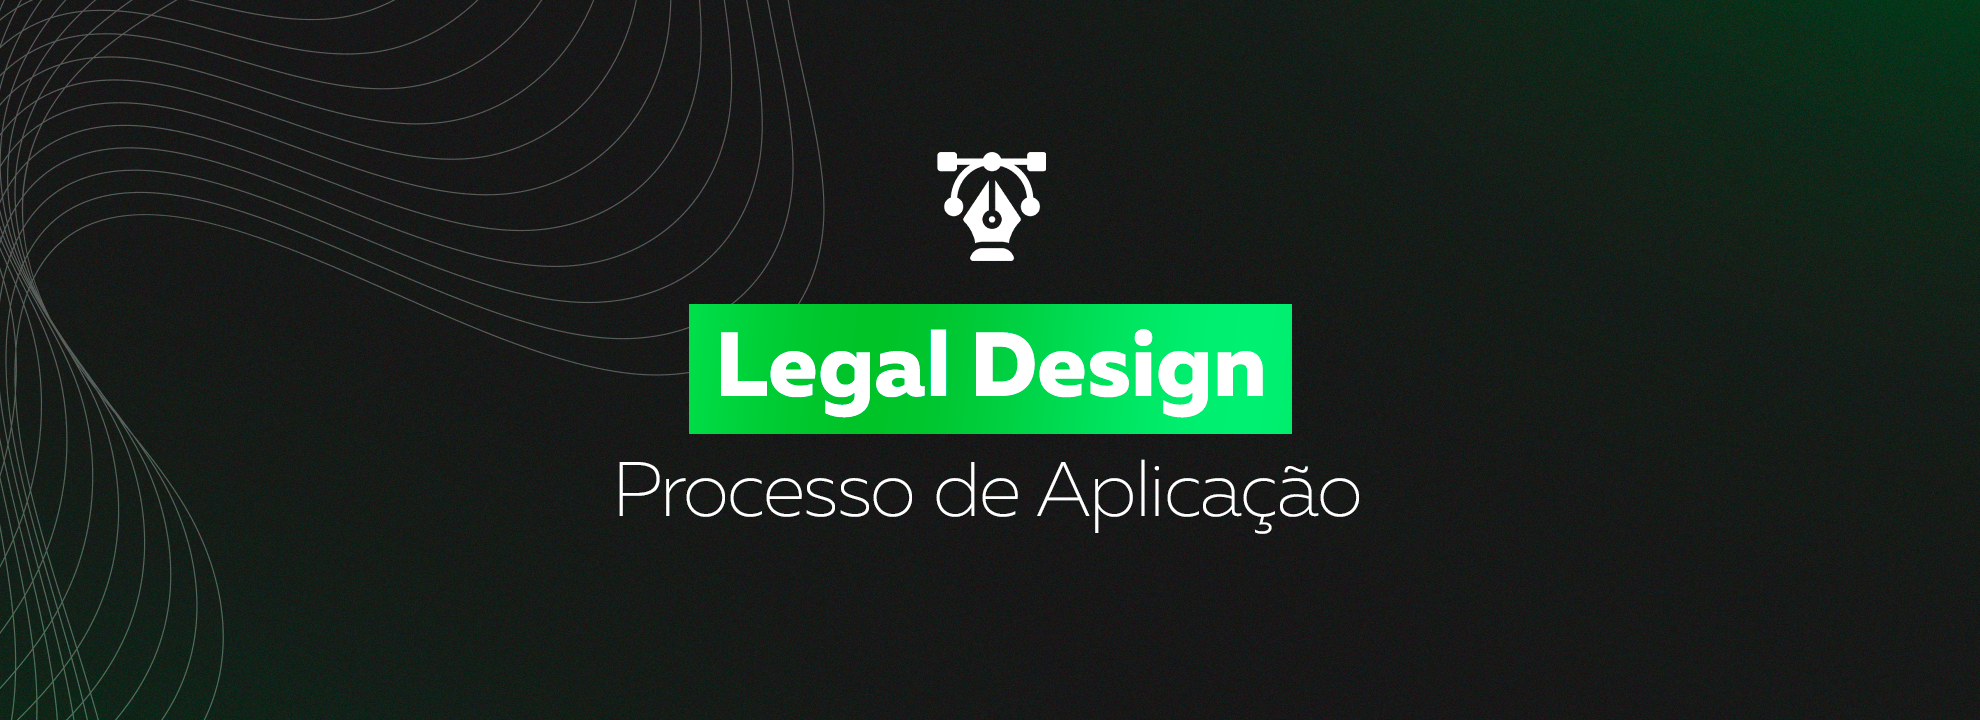 Legal Design processo de aplicação